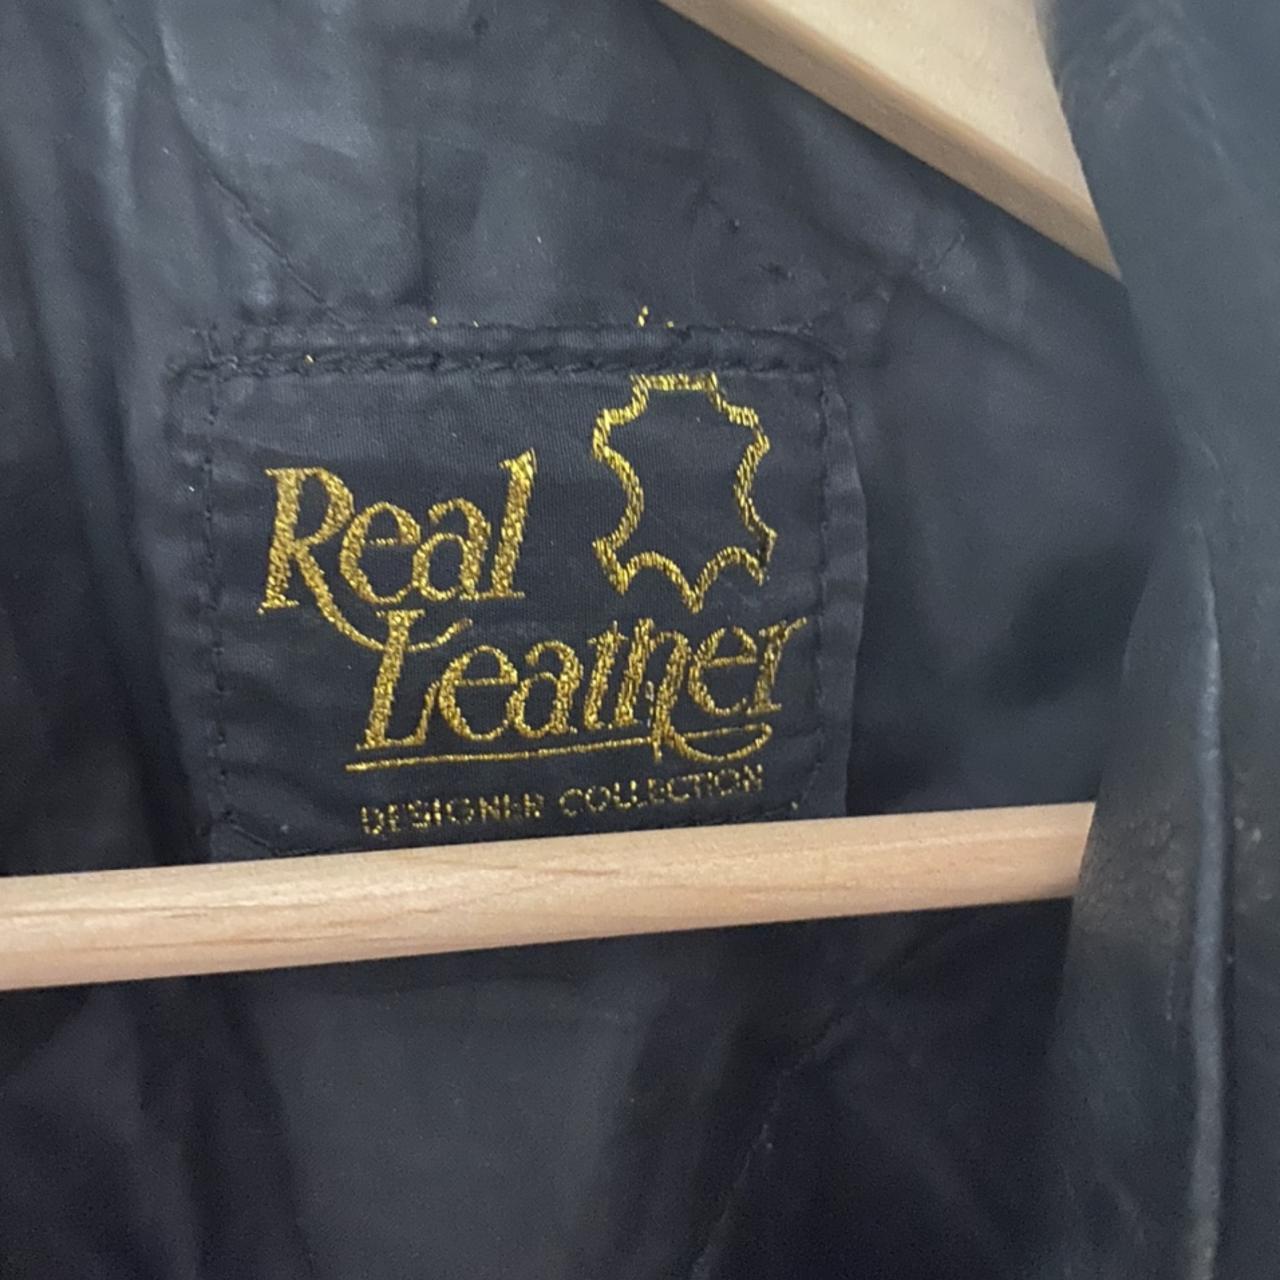 Real Leather Biker Jacket Black Size 10/12 Vintage... - Depop